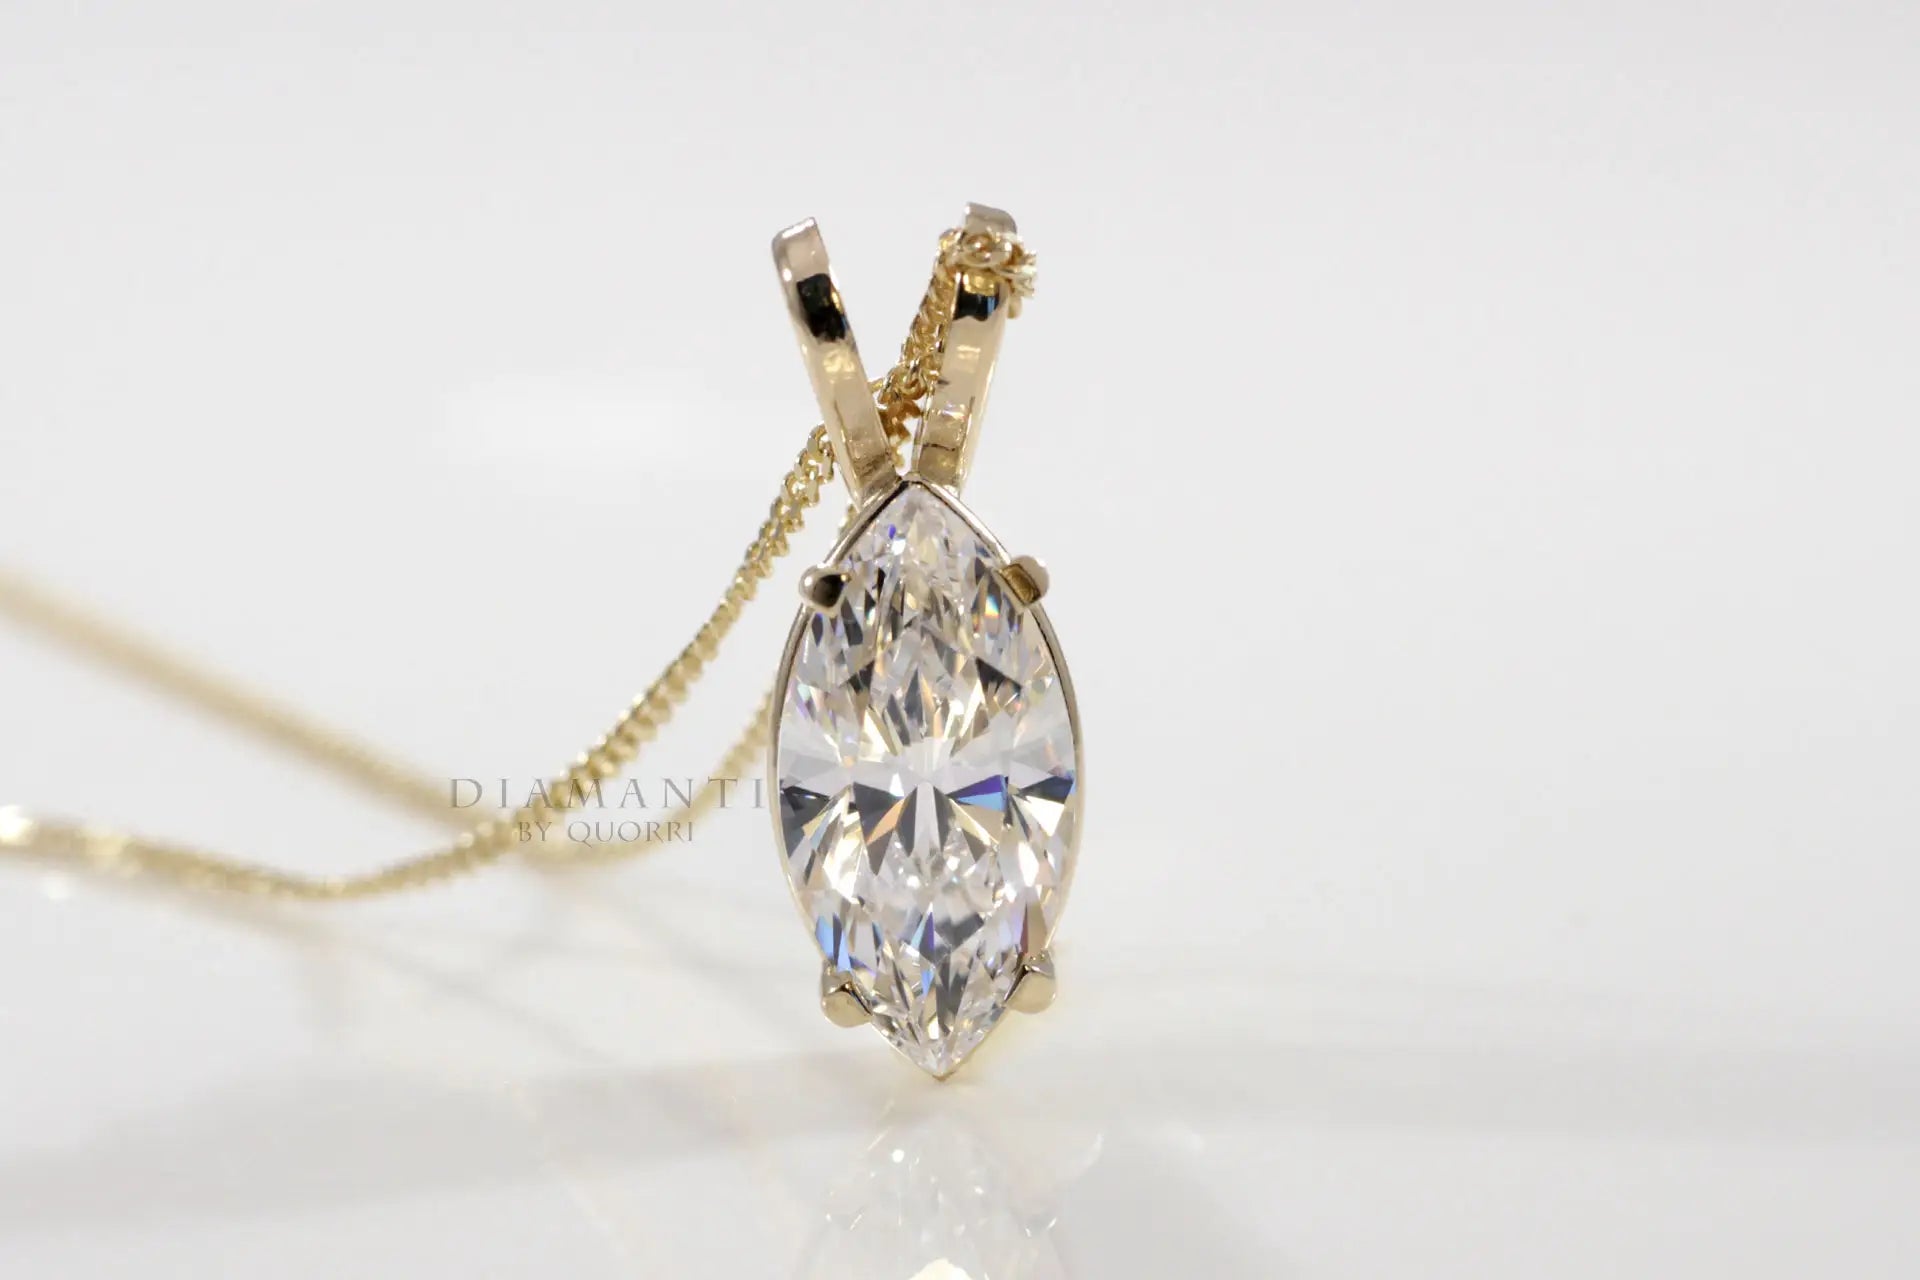 18k yellow gold designer marquise lab grown diamond solitaire pendant Quorri